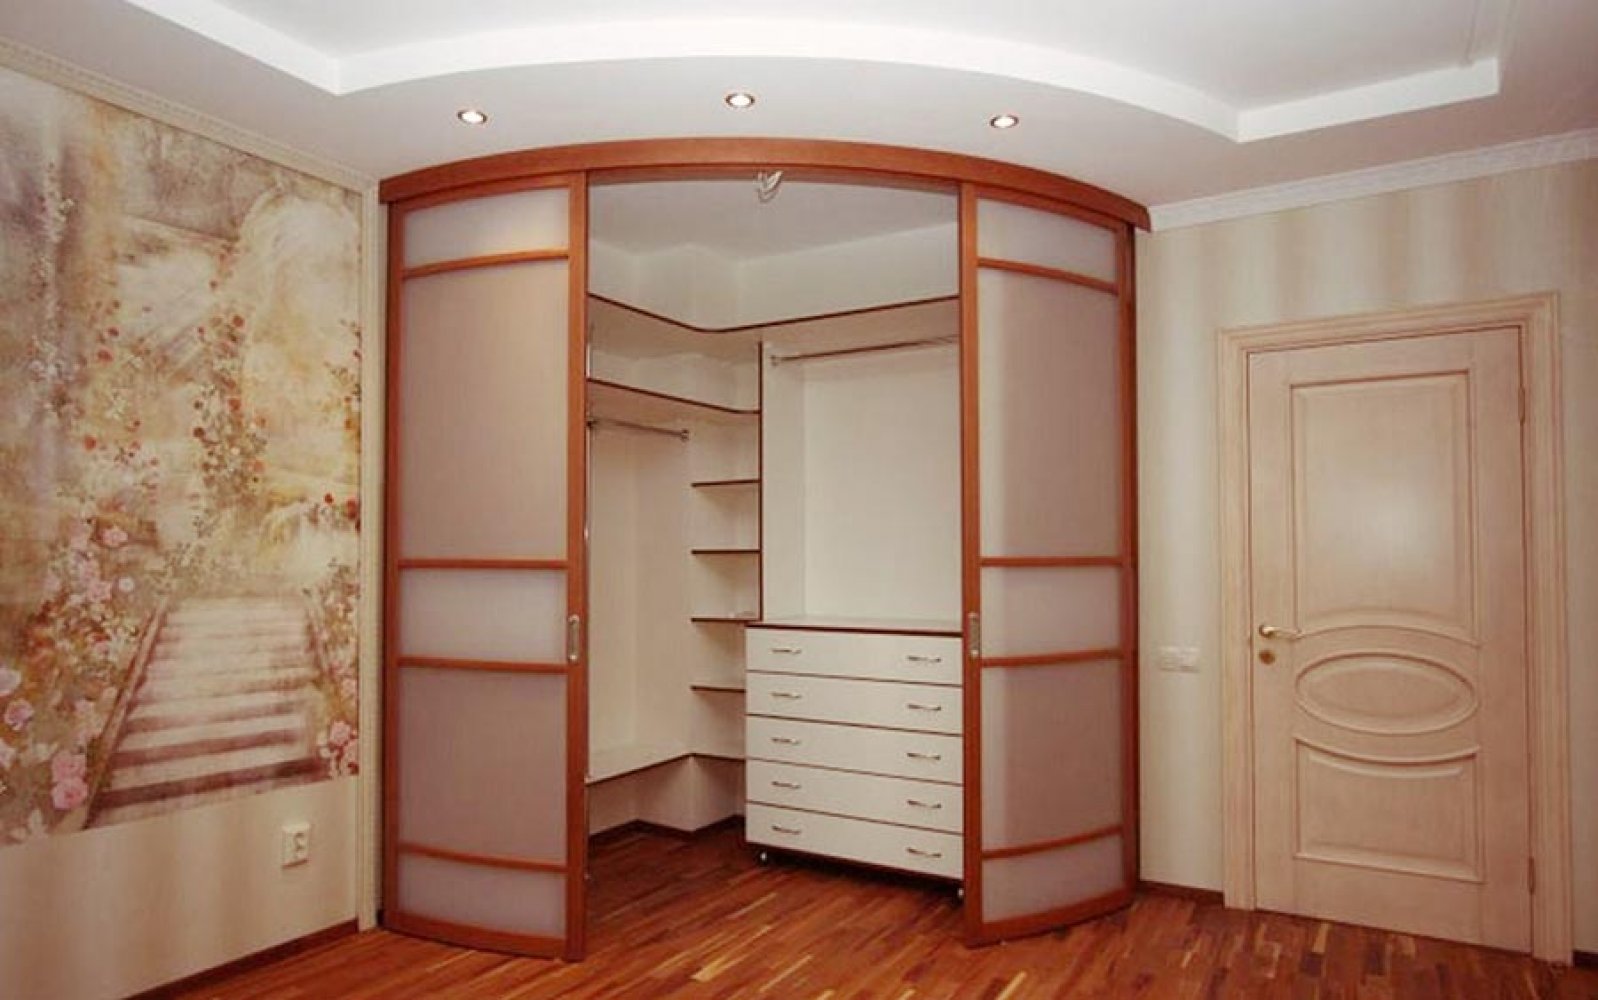 Дизайн угловой гардеробной комнаты маленького размера